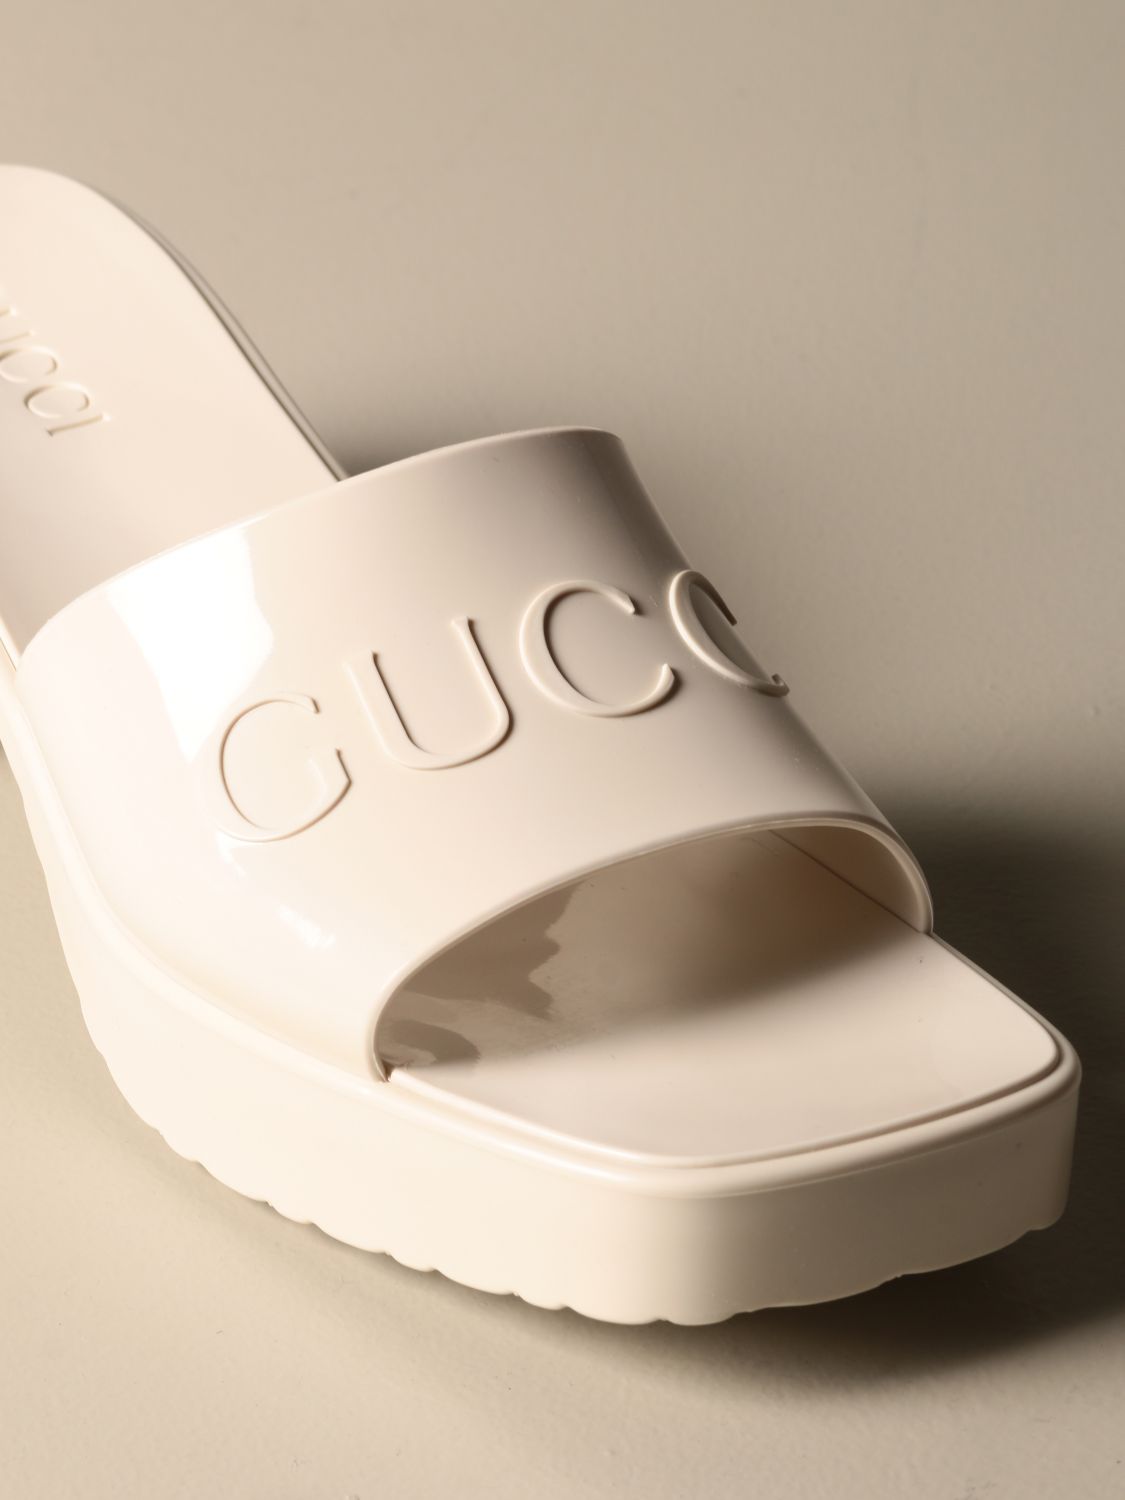 Buy > gucci rubber slide heel > in stock